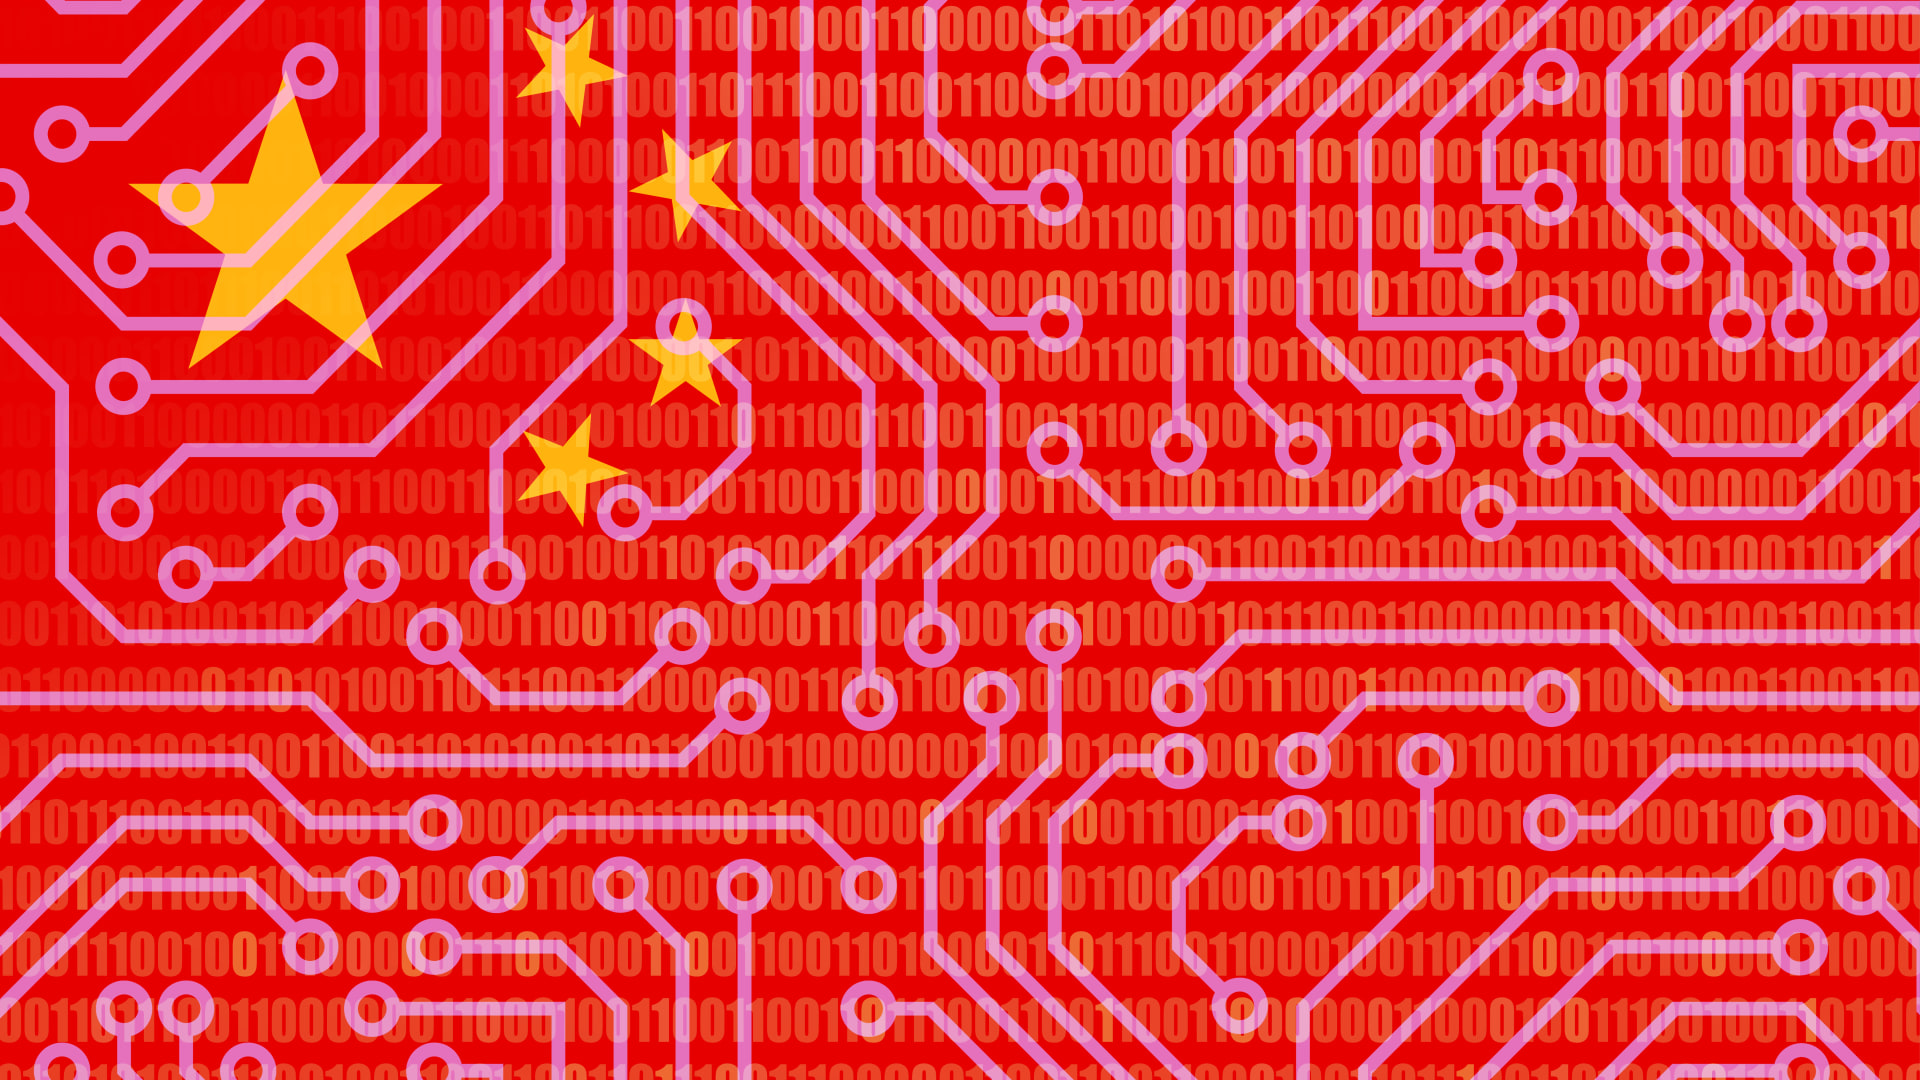 Alibaba, Tencent among investors in Zhipu, China's OpenAI rival